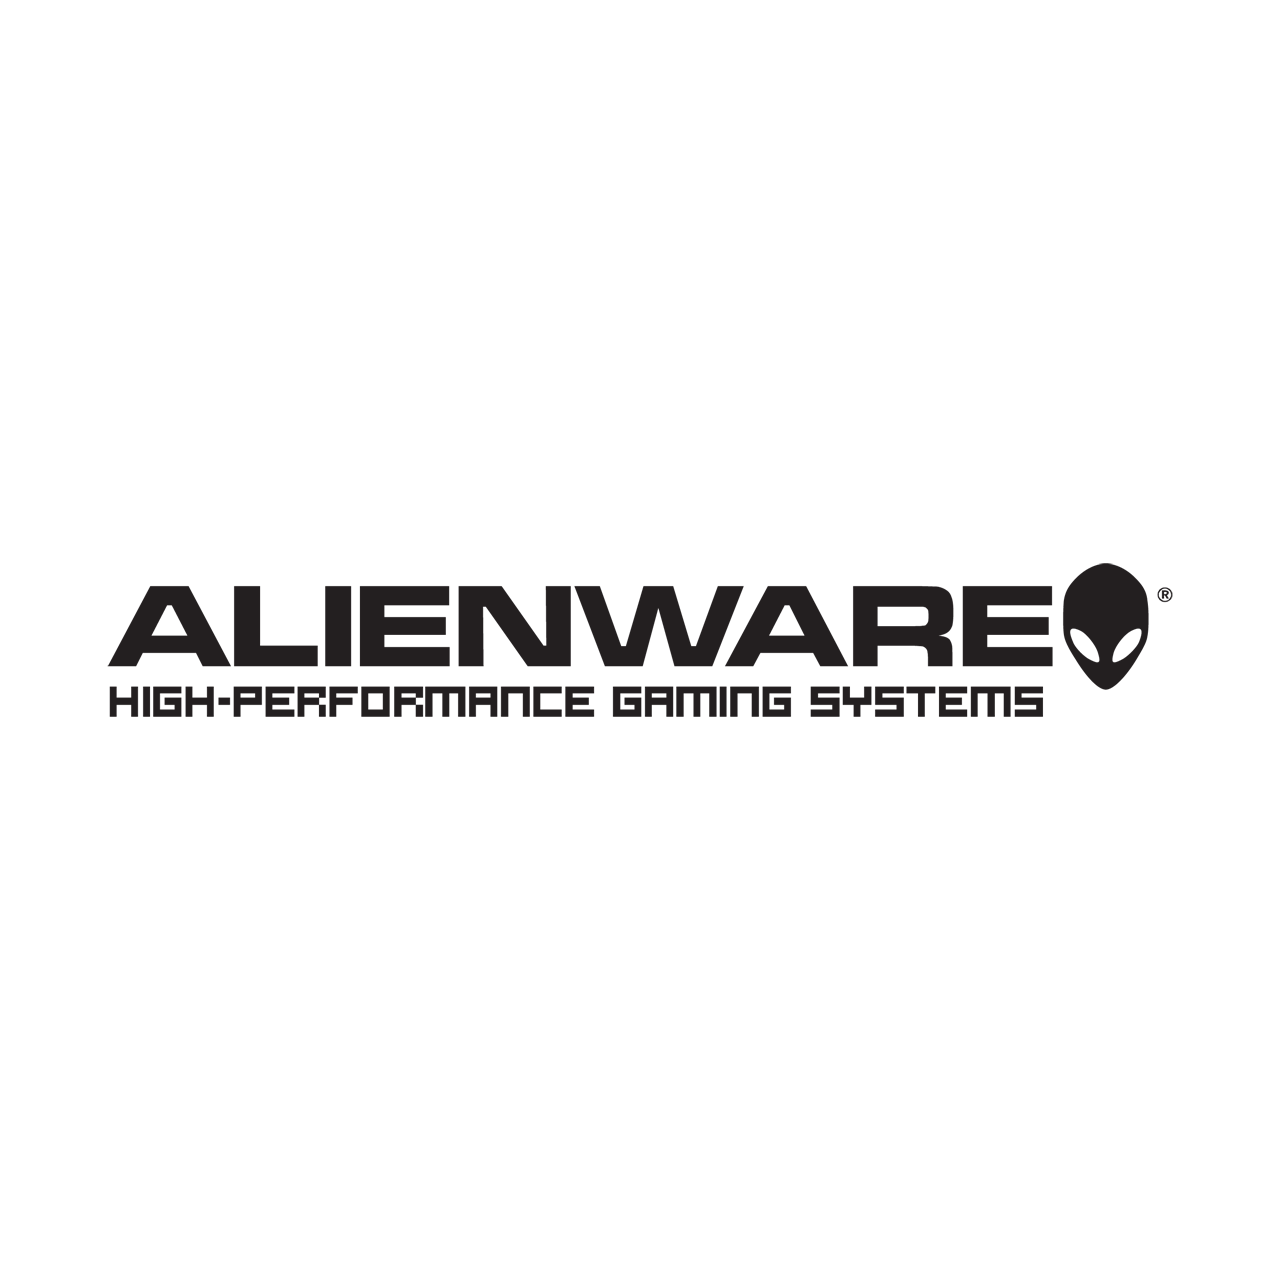 Alienware logotipo PNG Baixar imagem